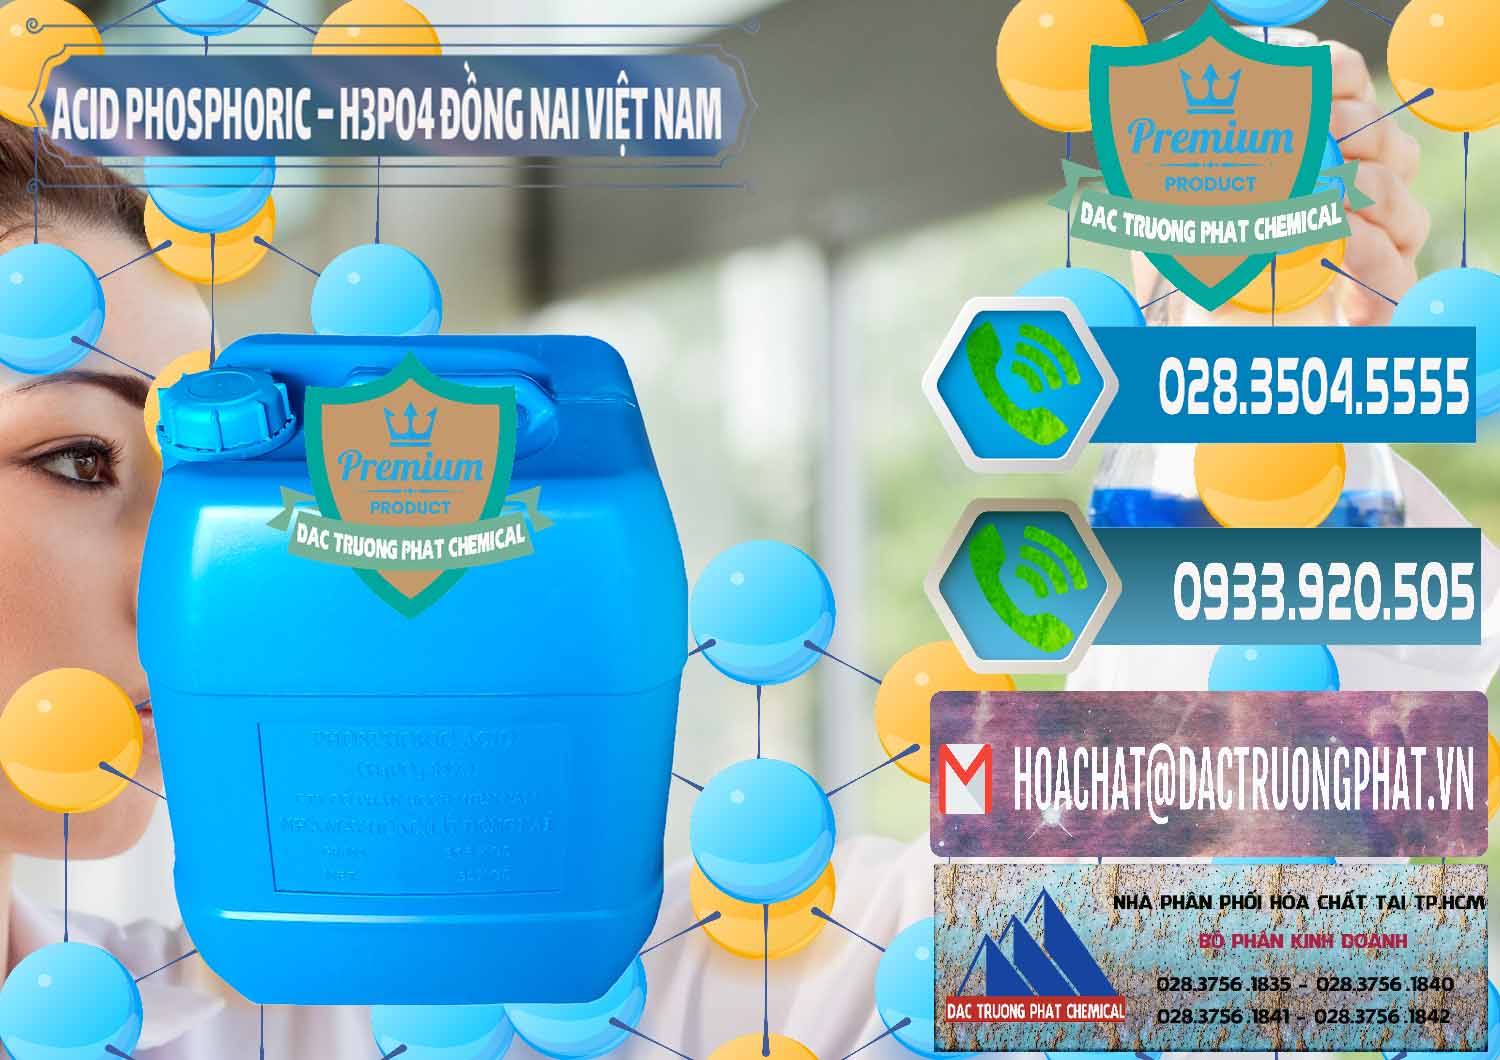 Nơi cung cấp ( bán ) Acid Phosphoric – Axit Phosphoric 85% Đồng Nai Việt Nam - 0183 - Công ty chuyên kinh doanh ( bán ) hóa chất tại TP.HCM - congtyhoachat.net